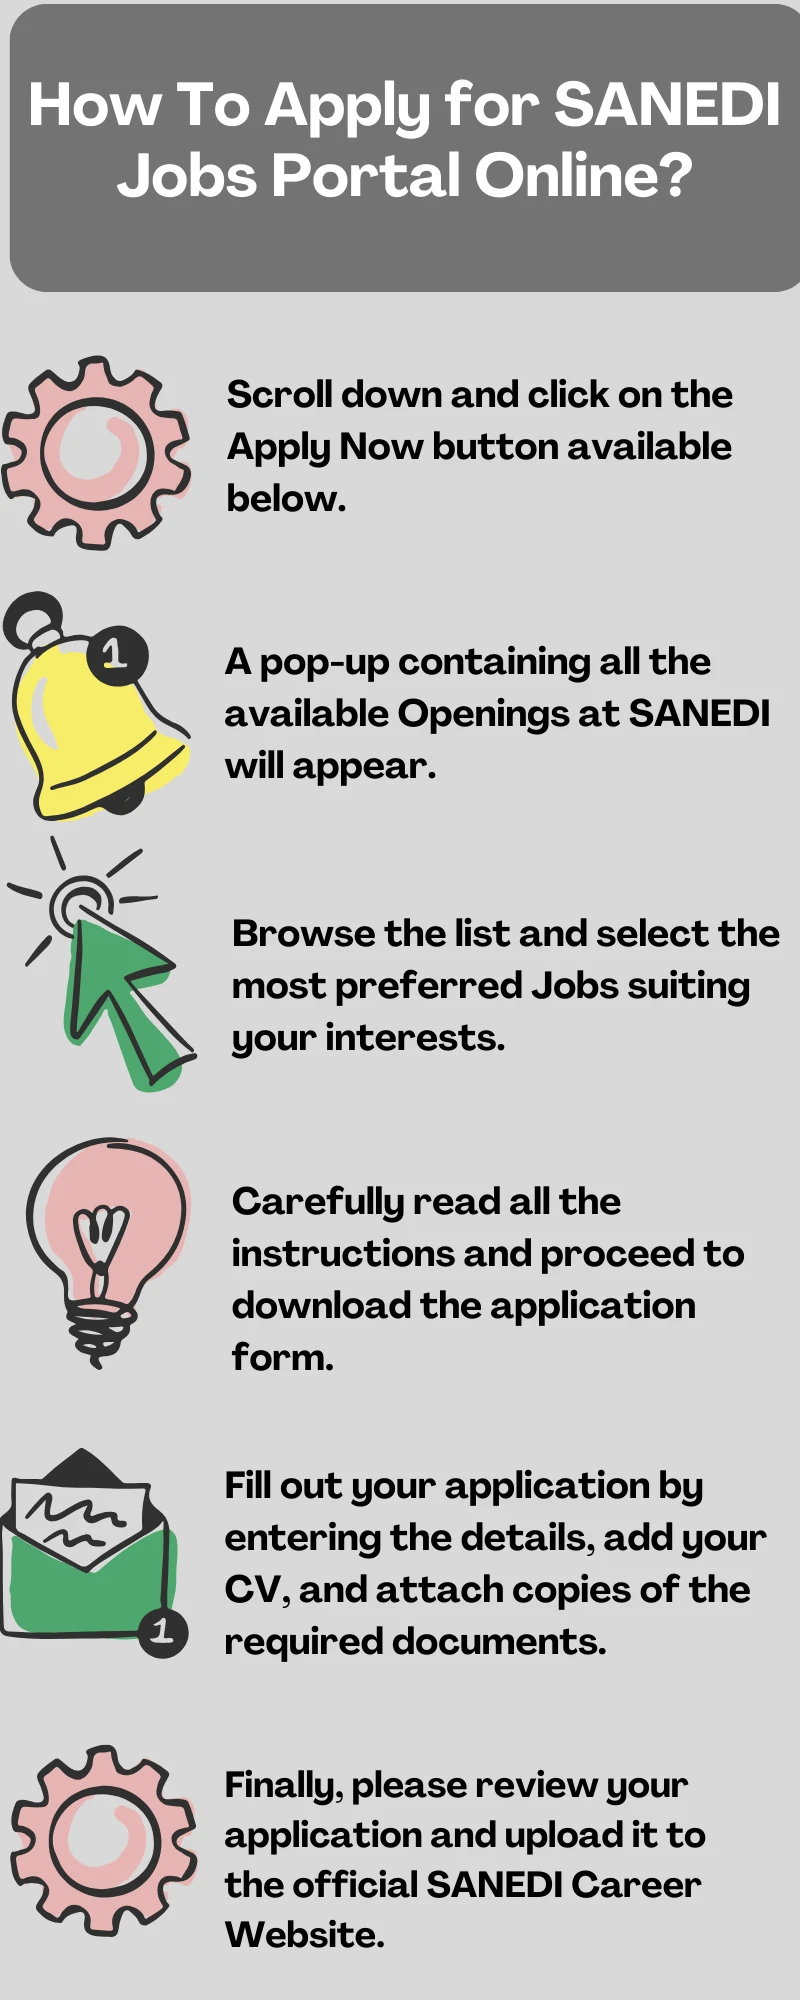 How To Apply for SANEDI Jobs Portal Online?